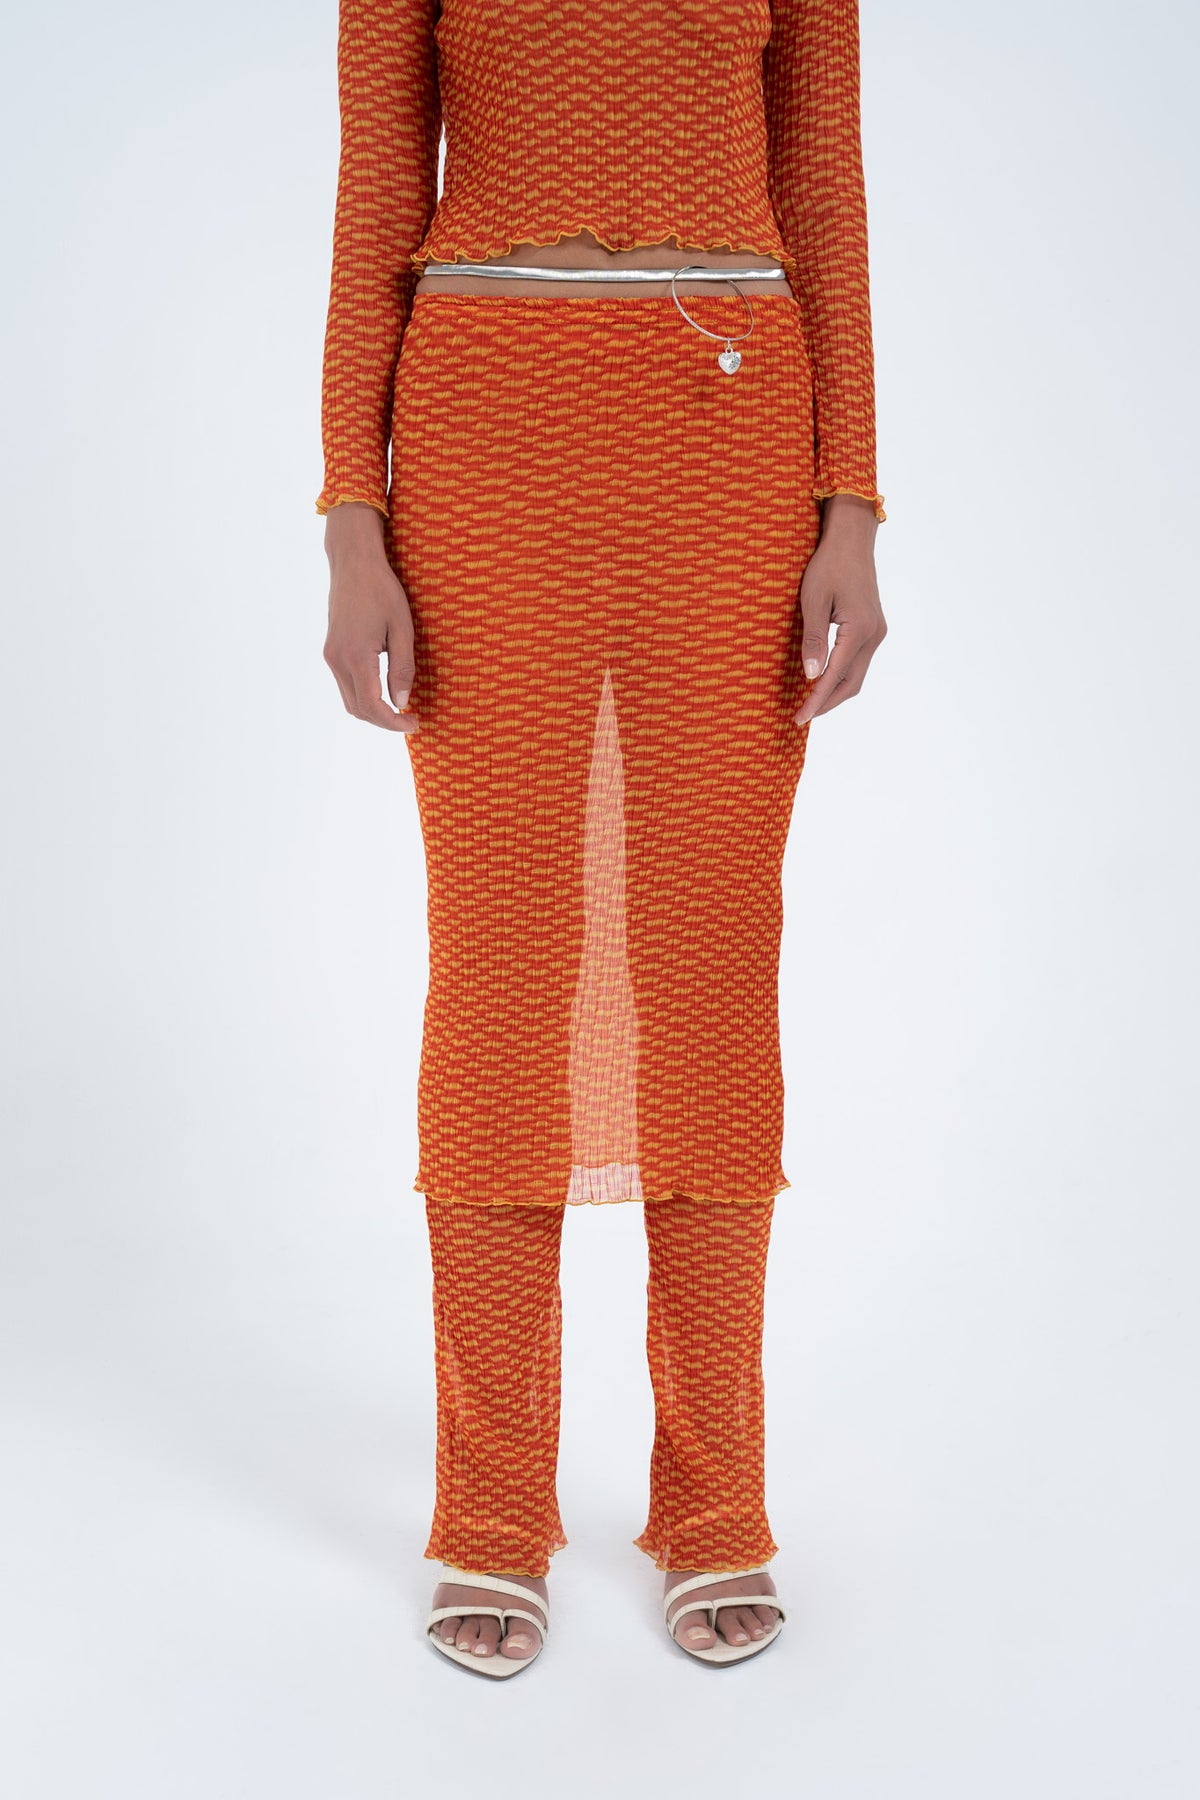 Arthur Tube Skirt // Orange Croc